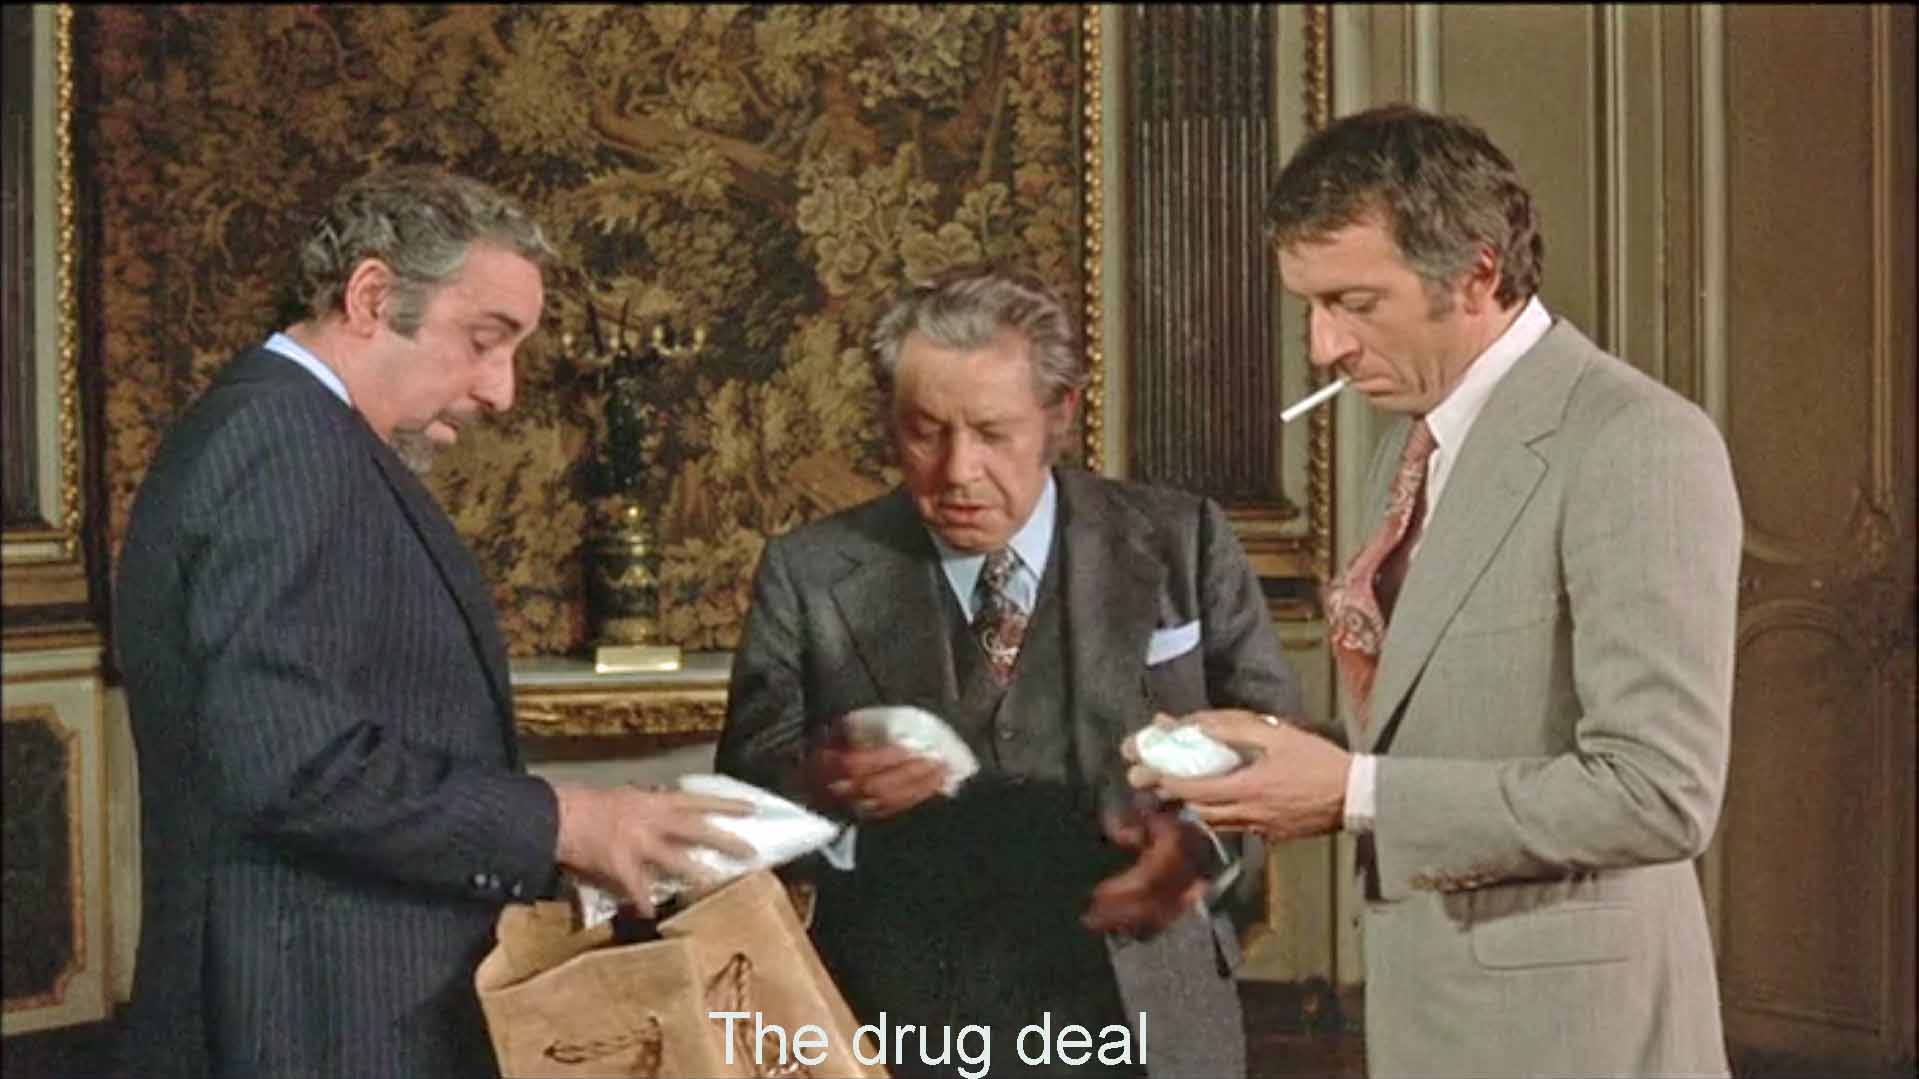 The drug deal